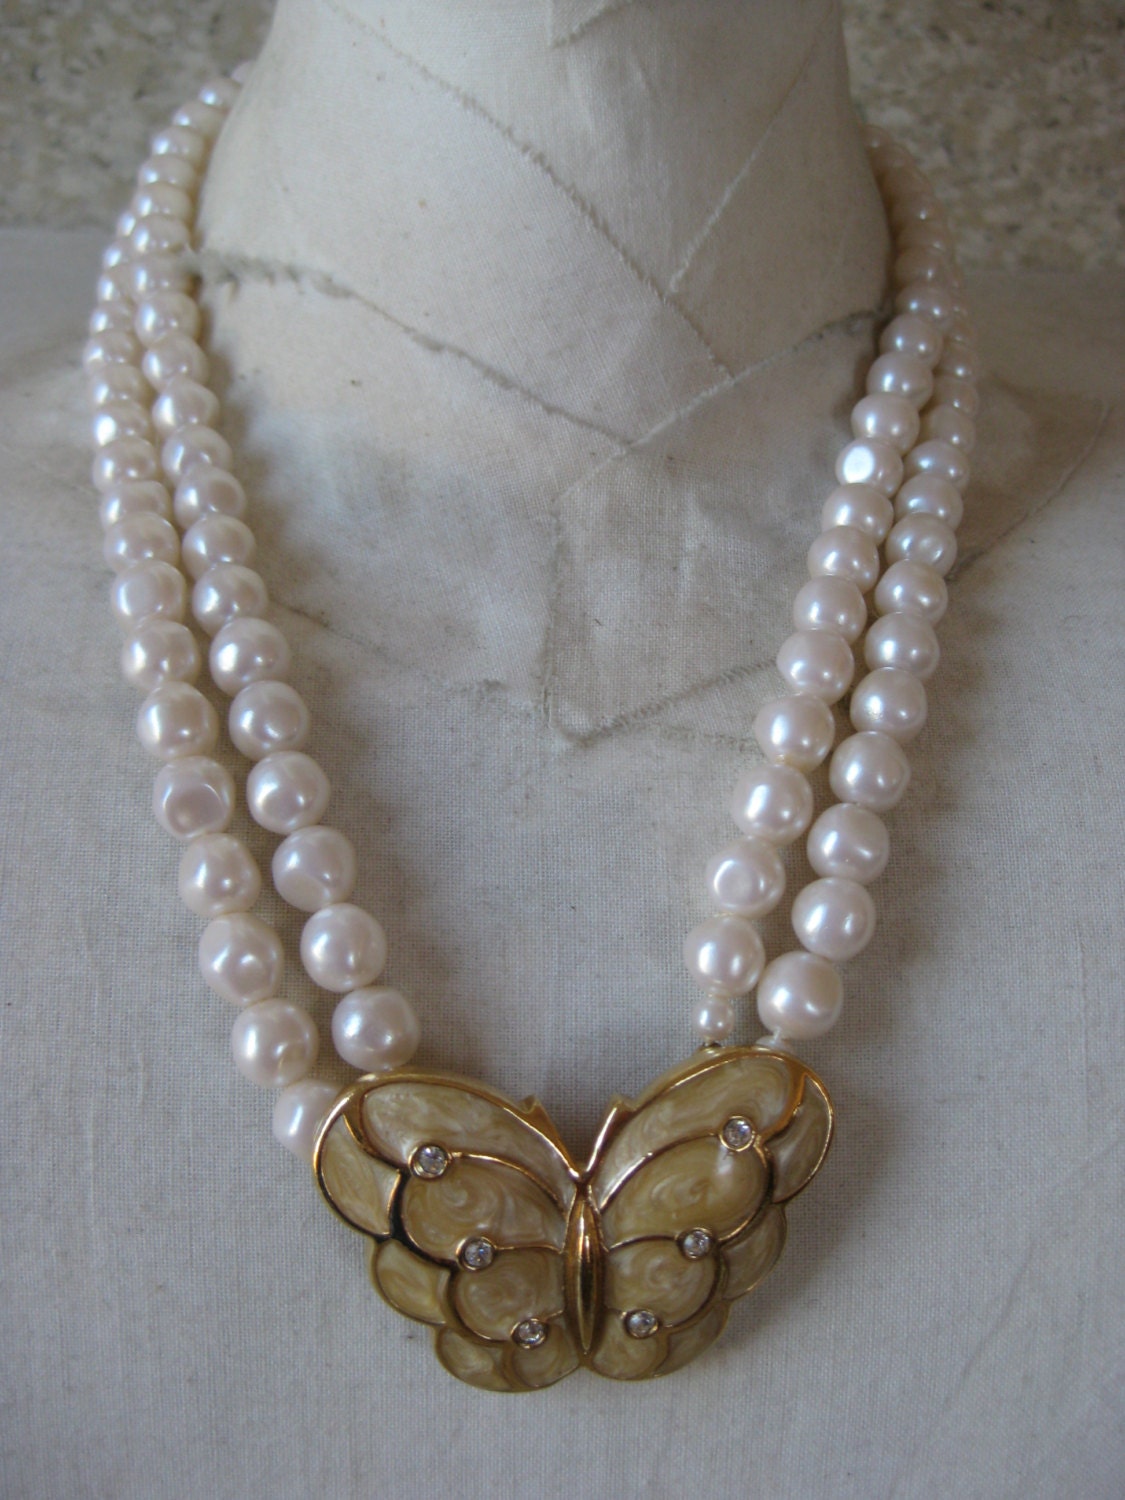 Butterfly Gold Pearl Necklace Rhinestone KJL Avon Vintage